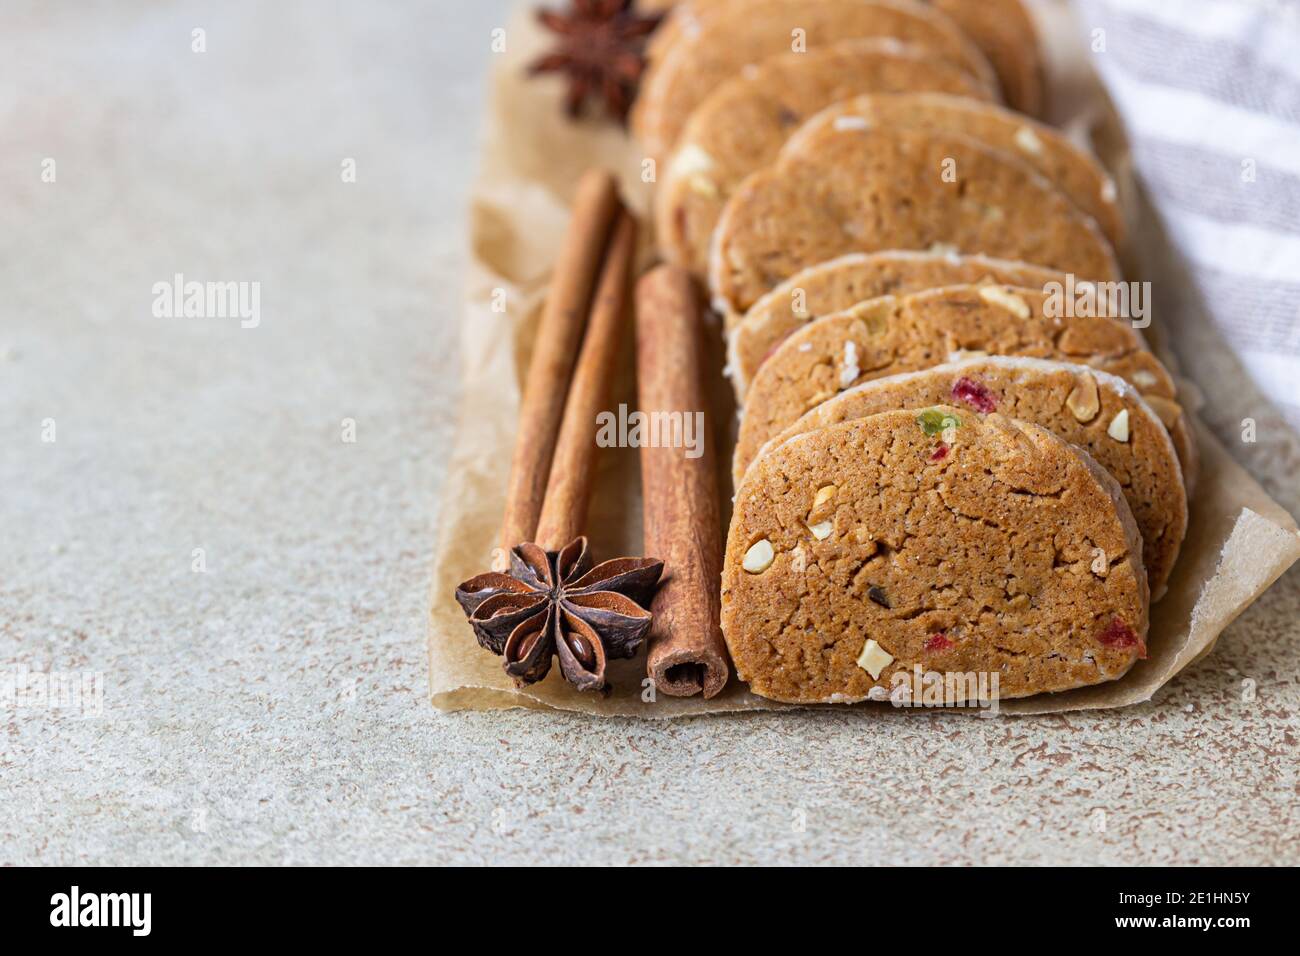 Biscuits sablés aux fruits confits sur fond de béton léger. Cookies Tutti Frutti. Mise au point sélective. Banque D'Images